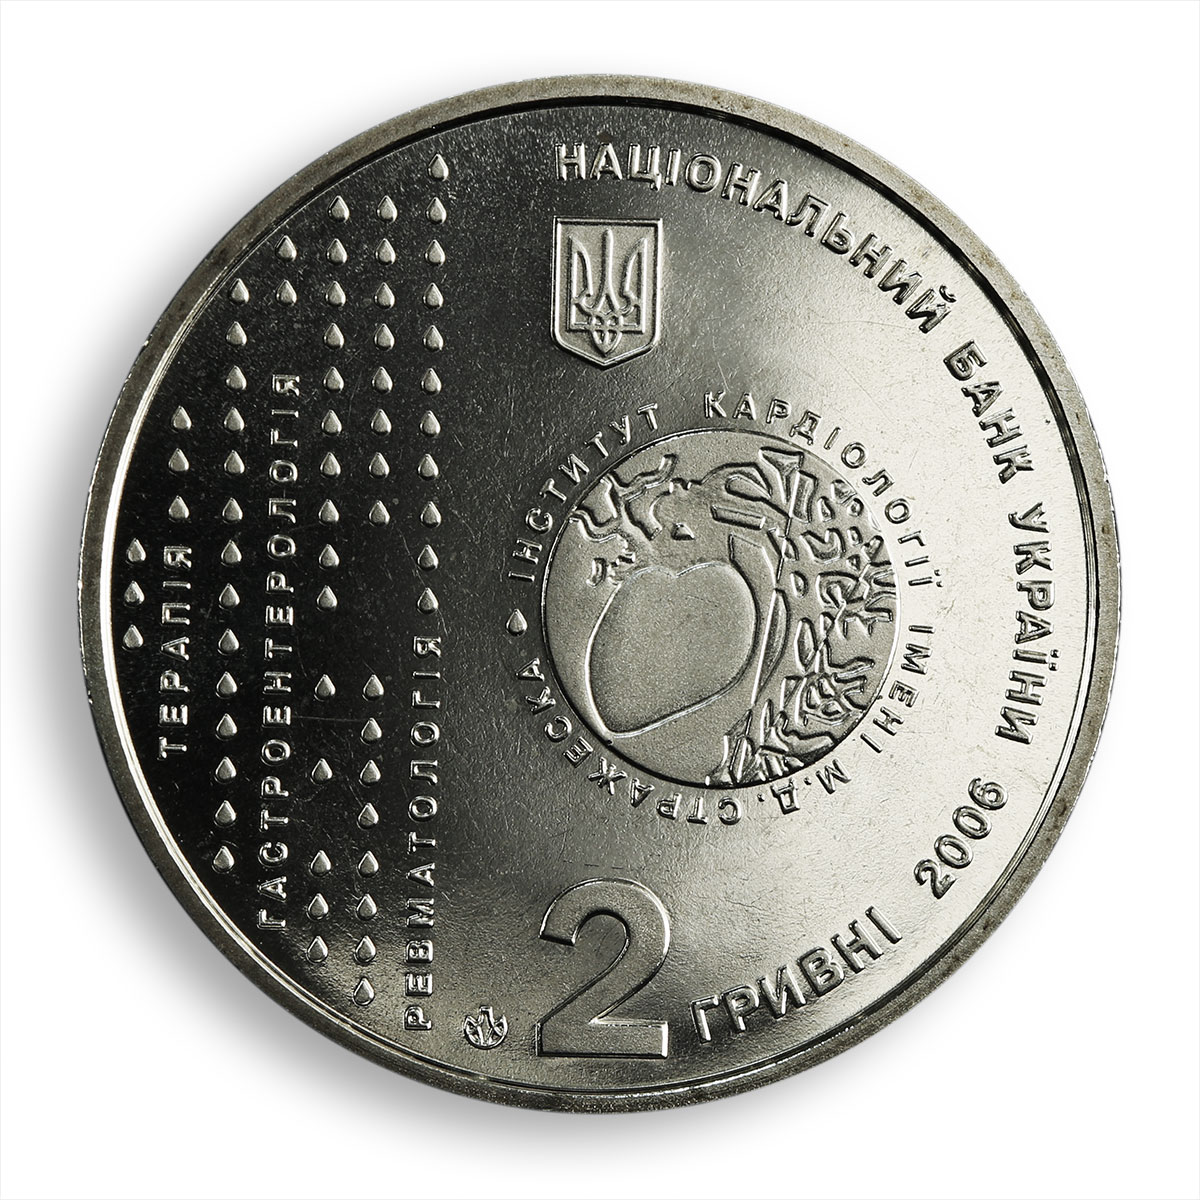 Ukraine 2 hryvnia Mykola Strazhesko doctor scientist cardiology nickel coin 2006